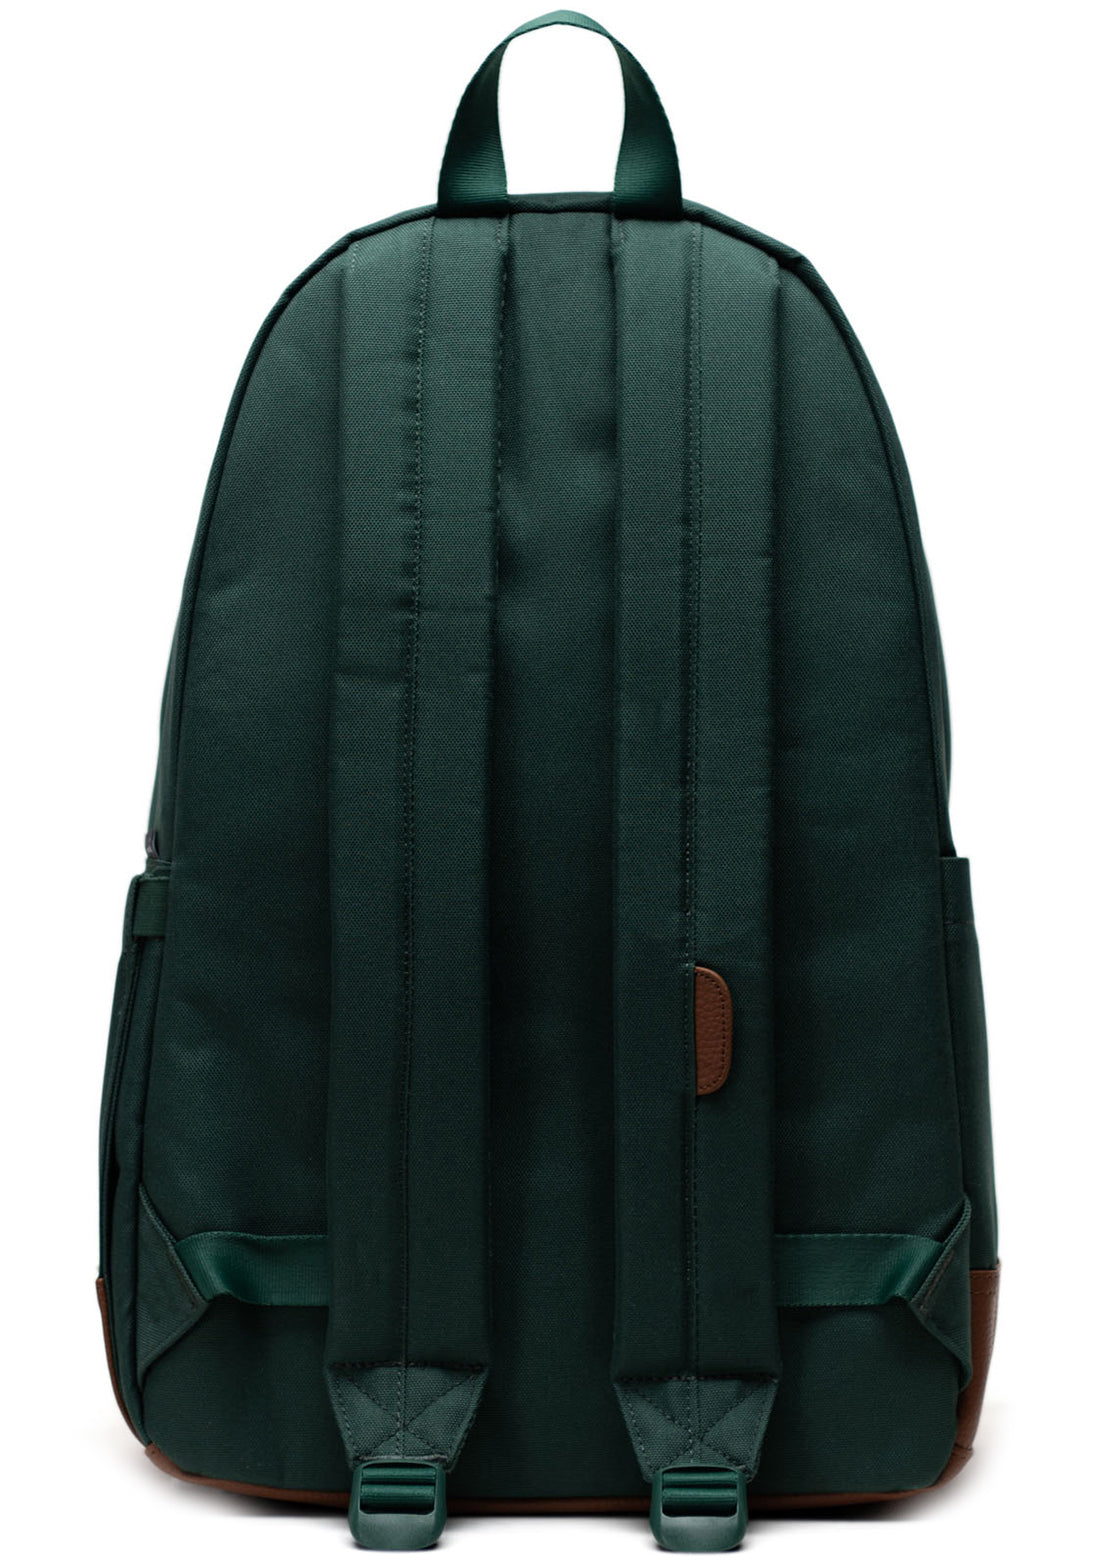 Herschel Heritage Backpack Trekking Green/Tan